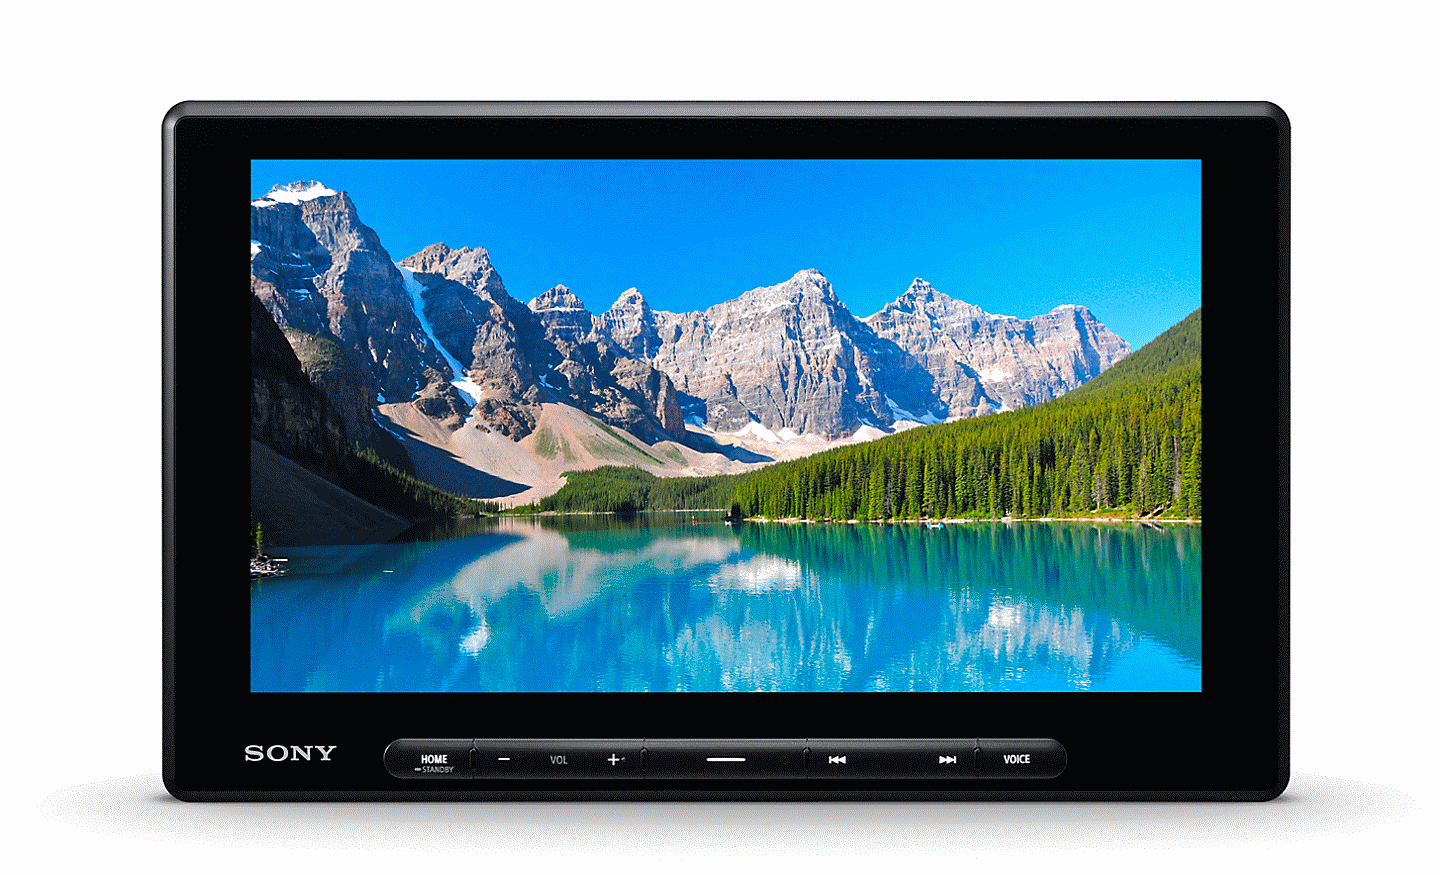 Vista frontal do XAV-AX8500 que apresenta uma imagem de montanhas e um lago no ecrã